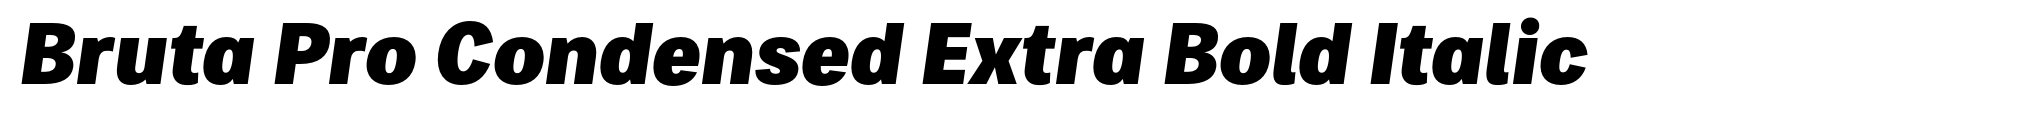 Bruta Pro Condensed Extra Bold Italic image